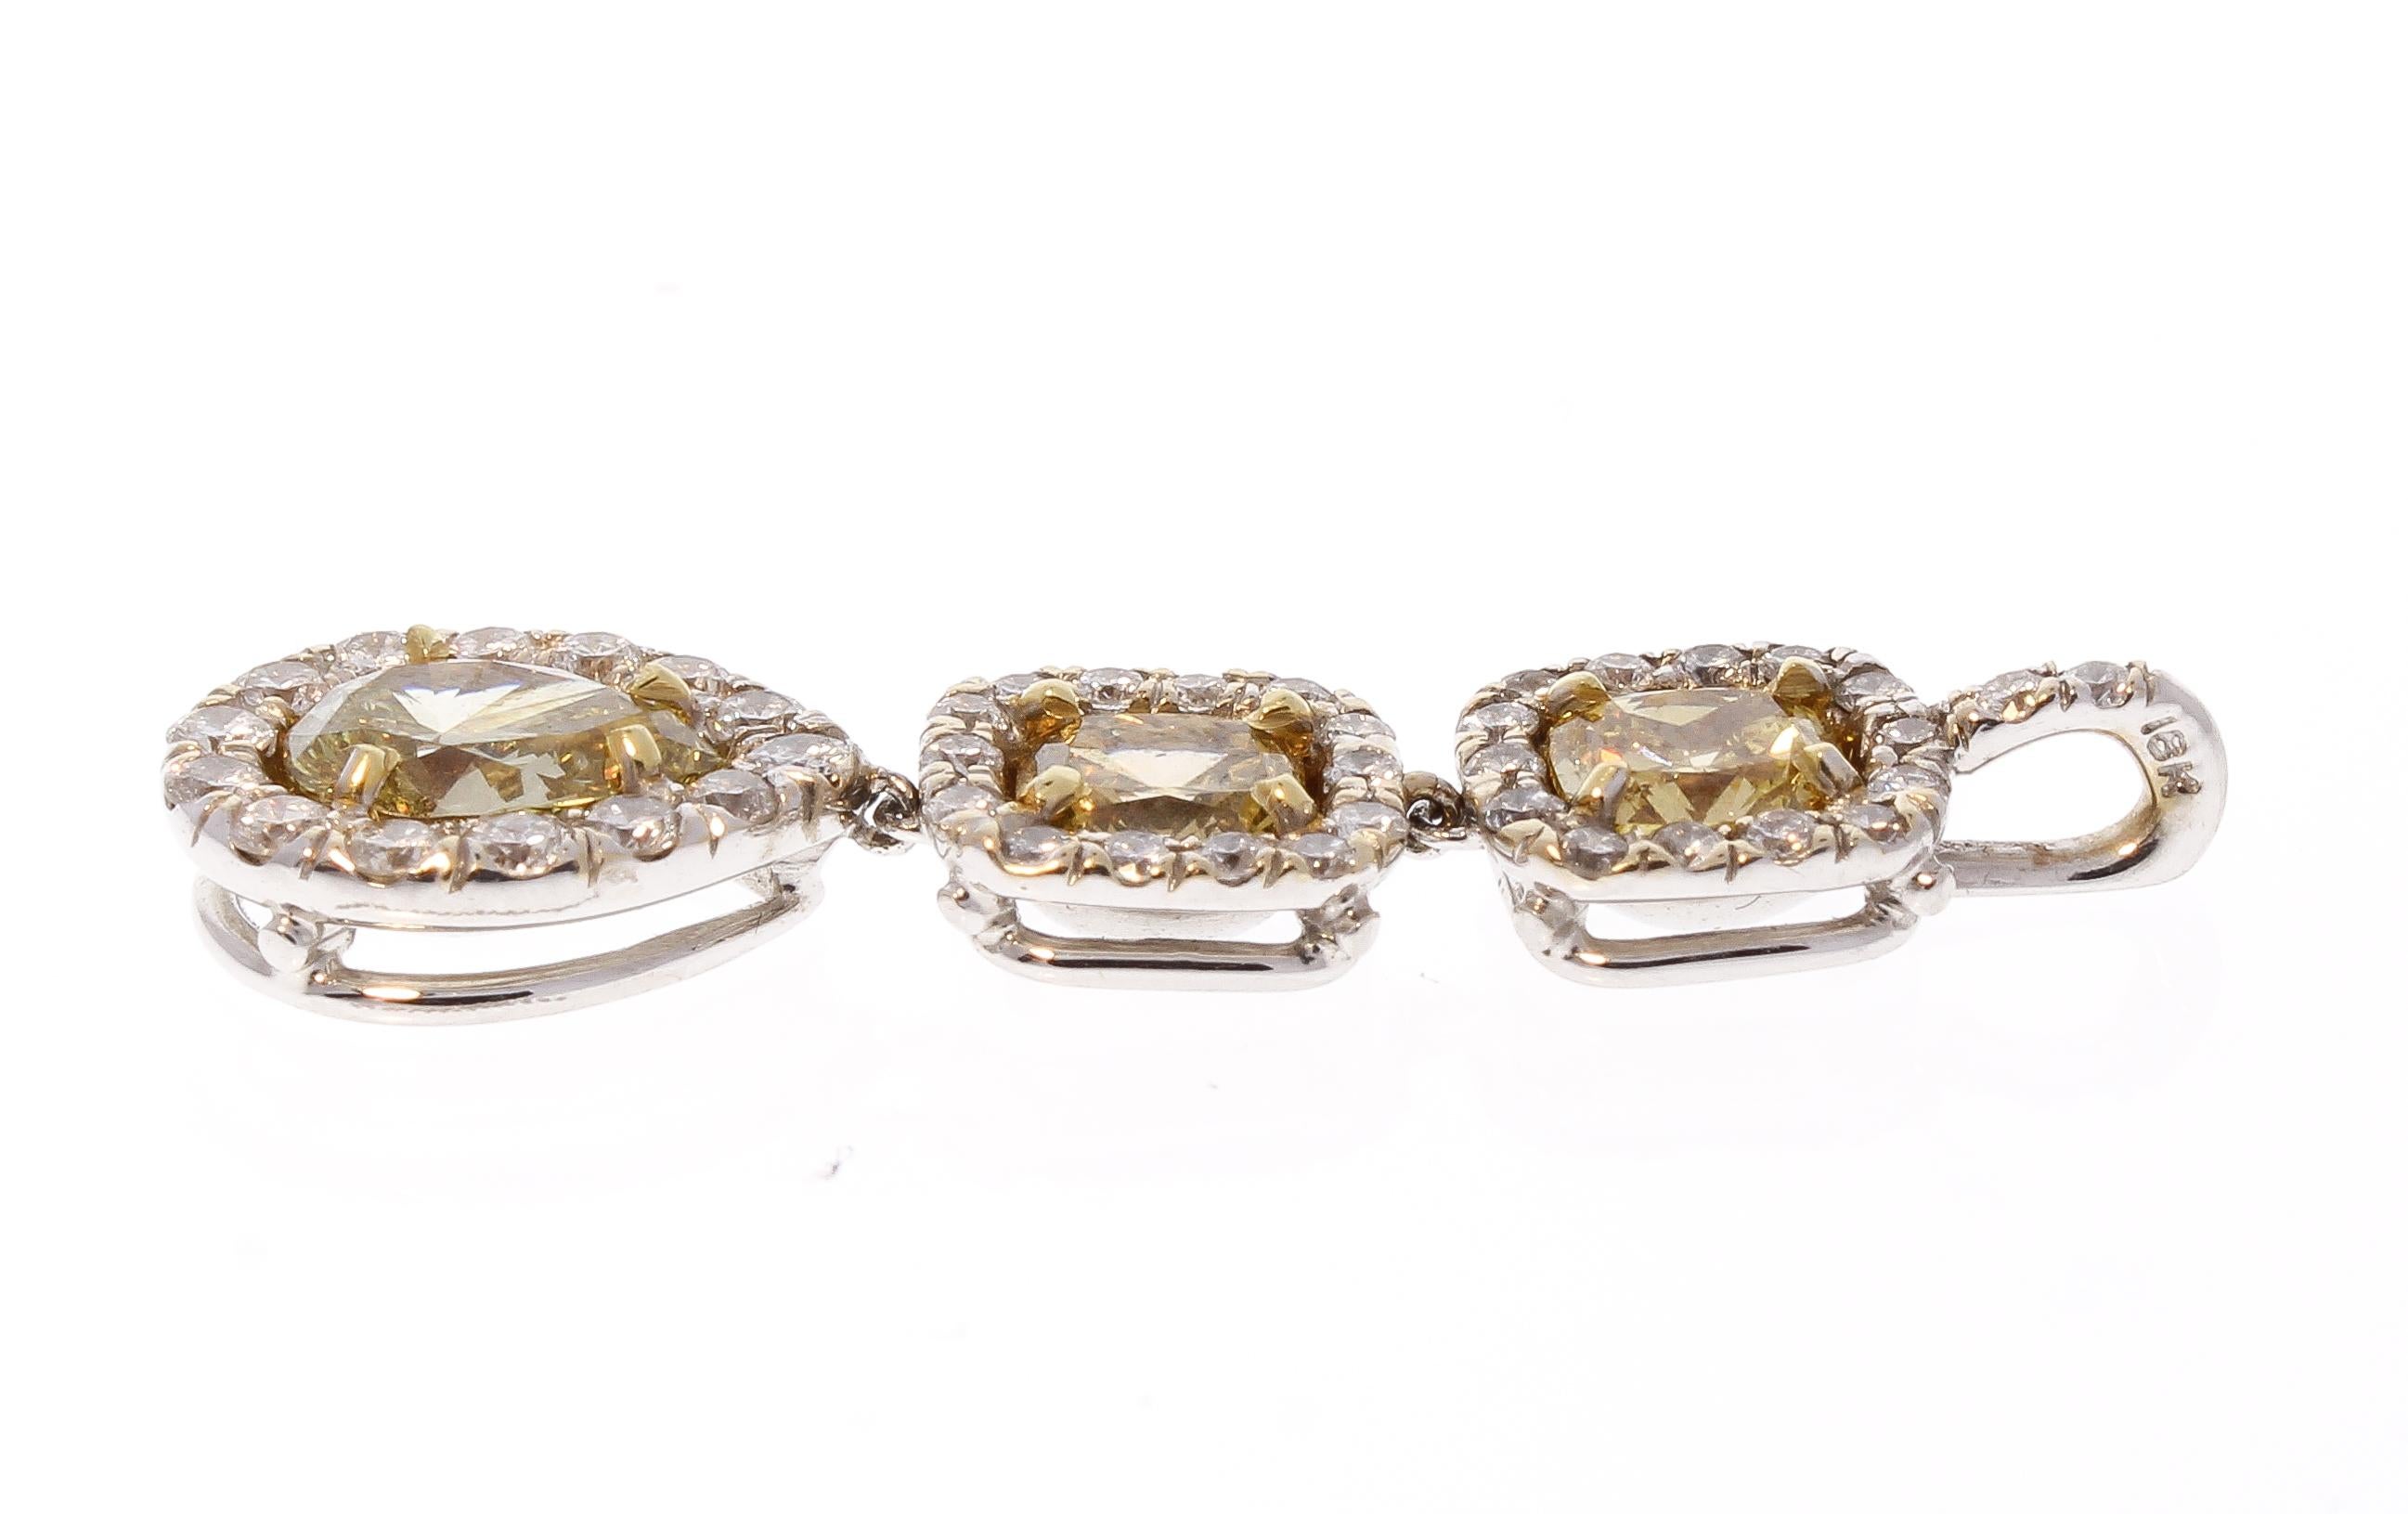 Si vous êtes à la recherche d'un cadeau pour ravir votre bien-aimée, ce pendentif en diamant de fantaisie en ligne est peut-être ce que vous cherchiez. Dotée d'un trio de diamants naturels de couleur jaune de fantaisie totalisant 1,78 carat, elle 